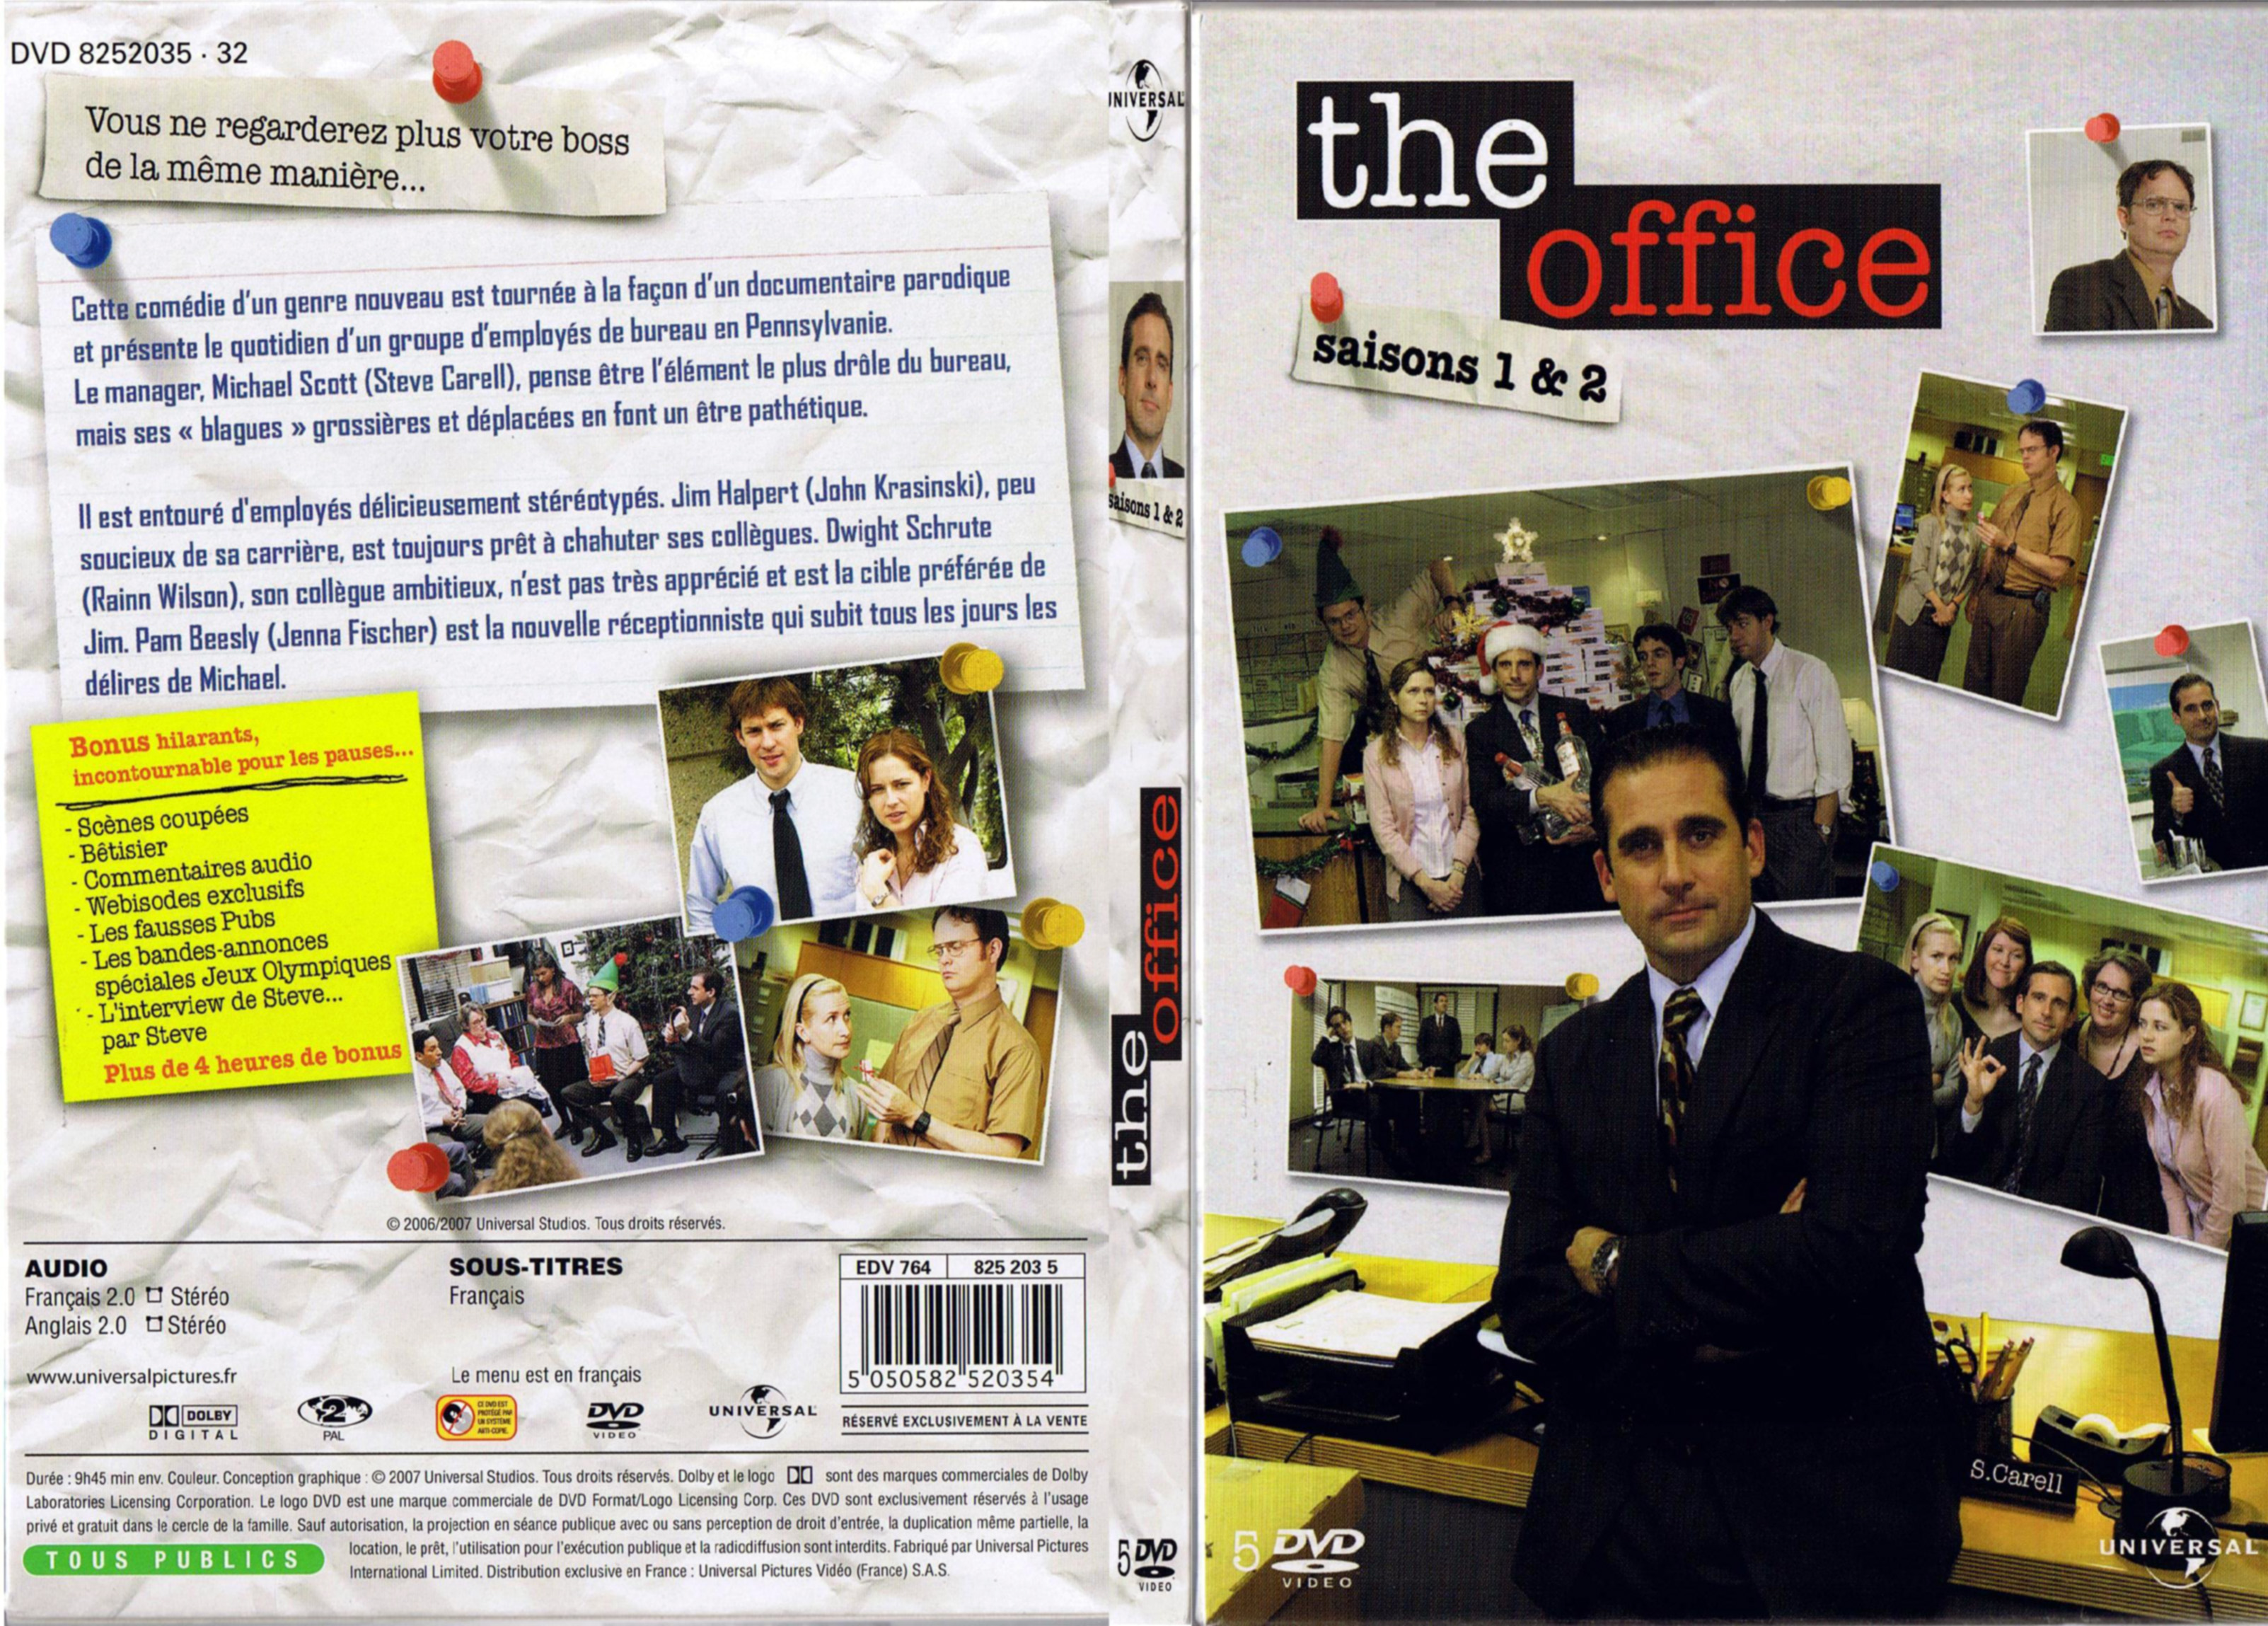 Jaquette DVD The office Saison 1 et 2 COFFRET